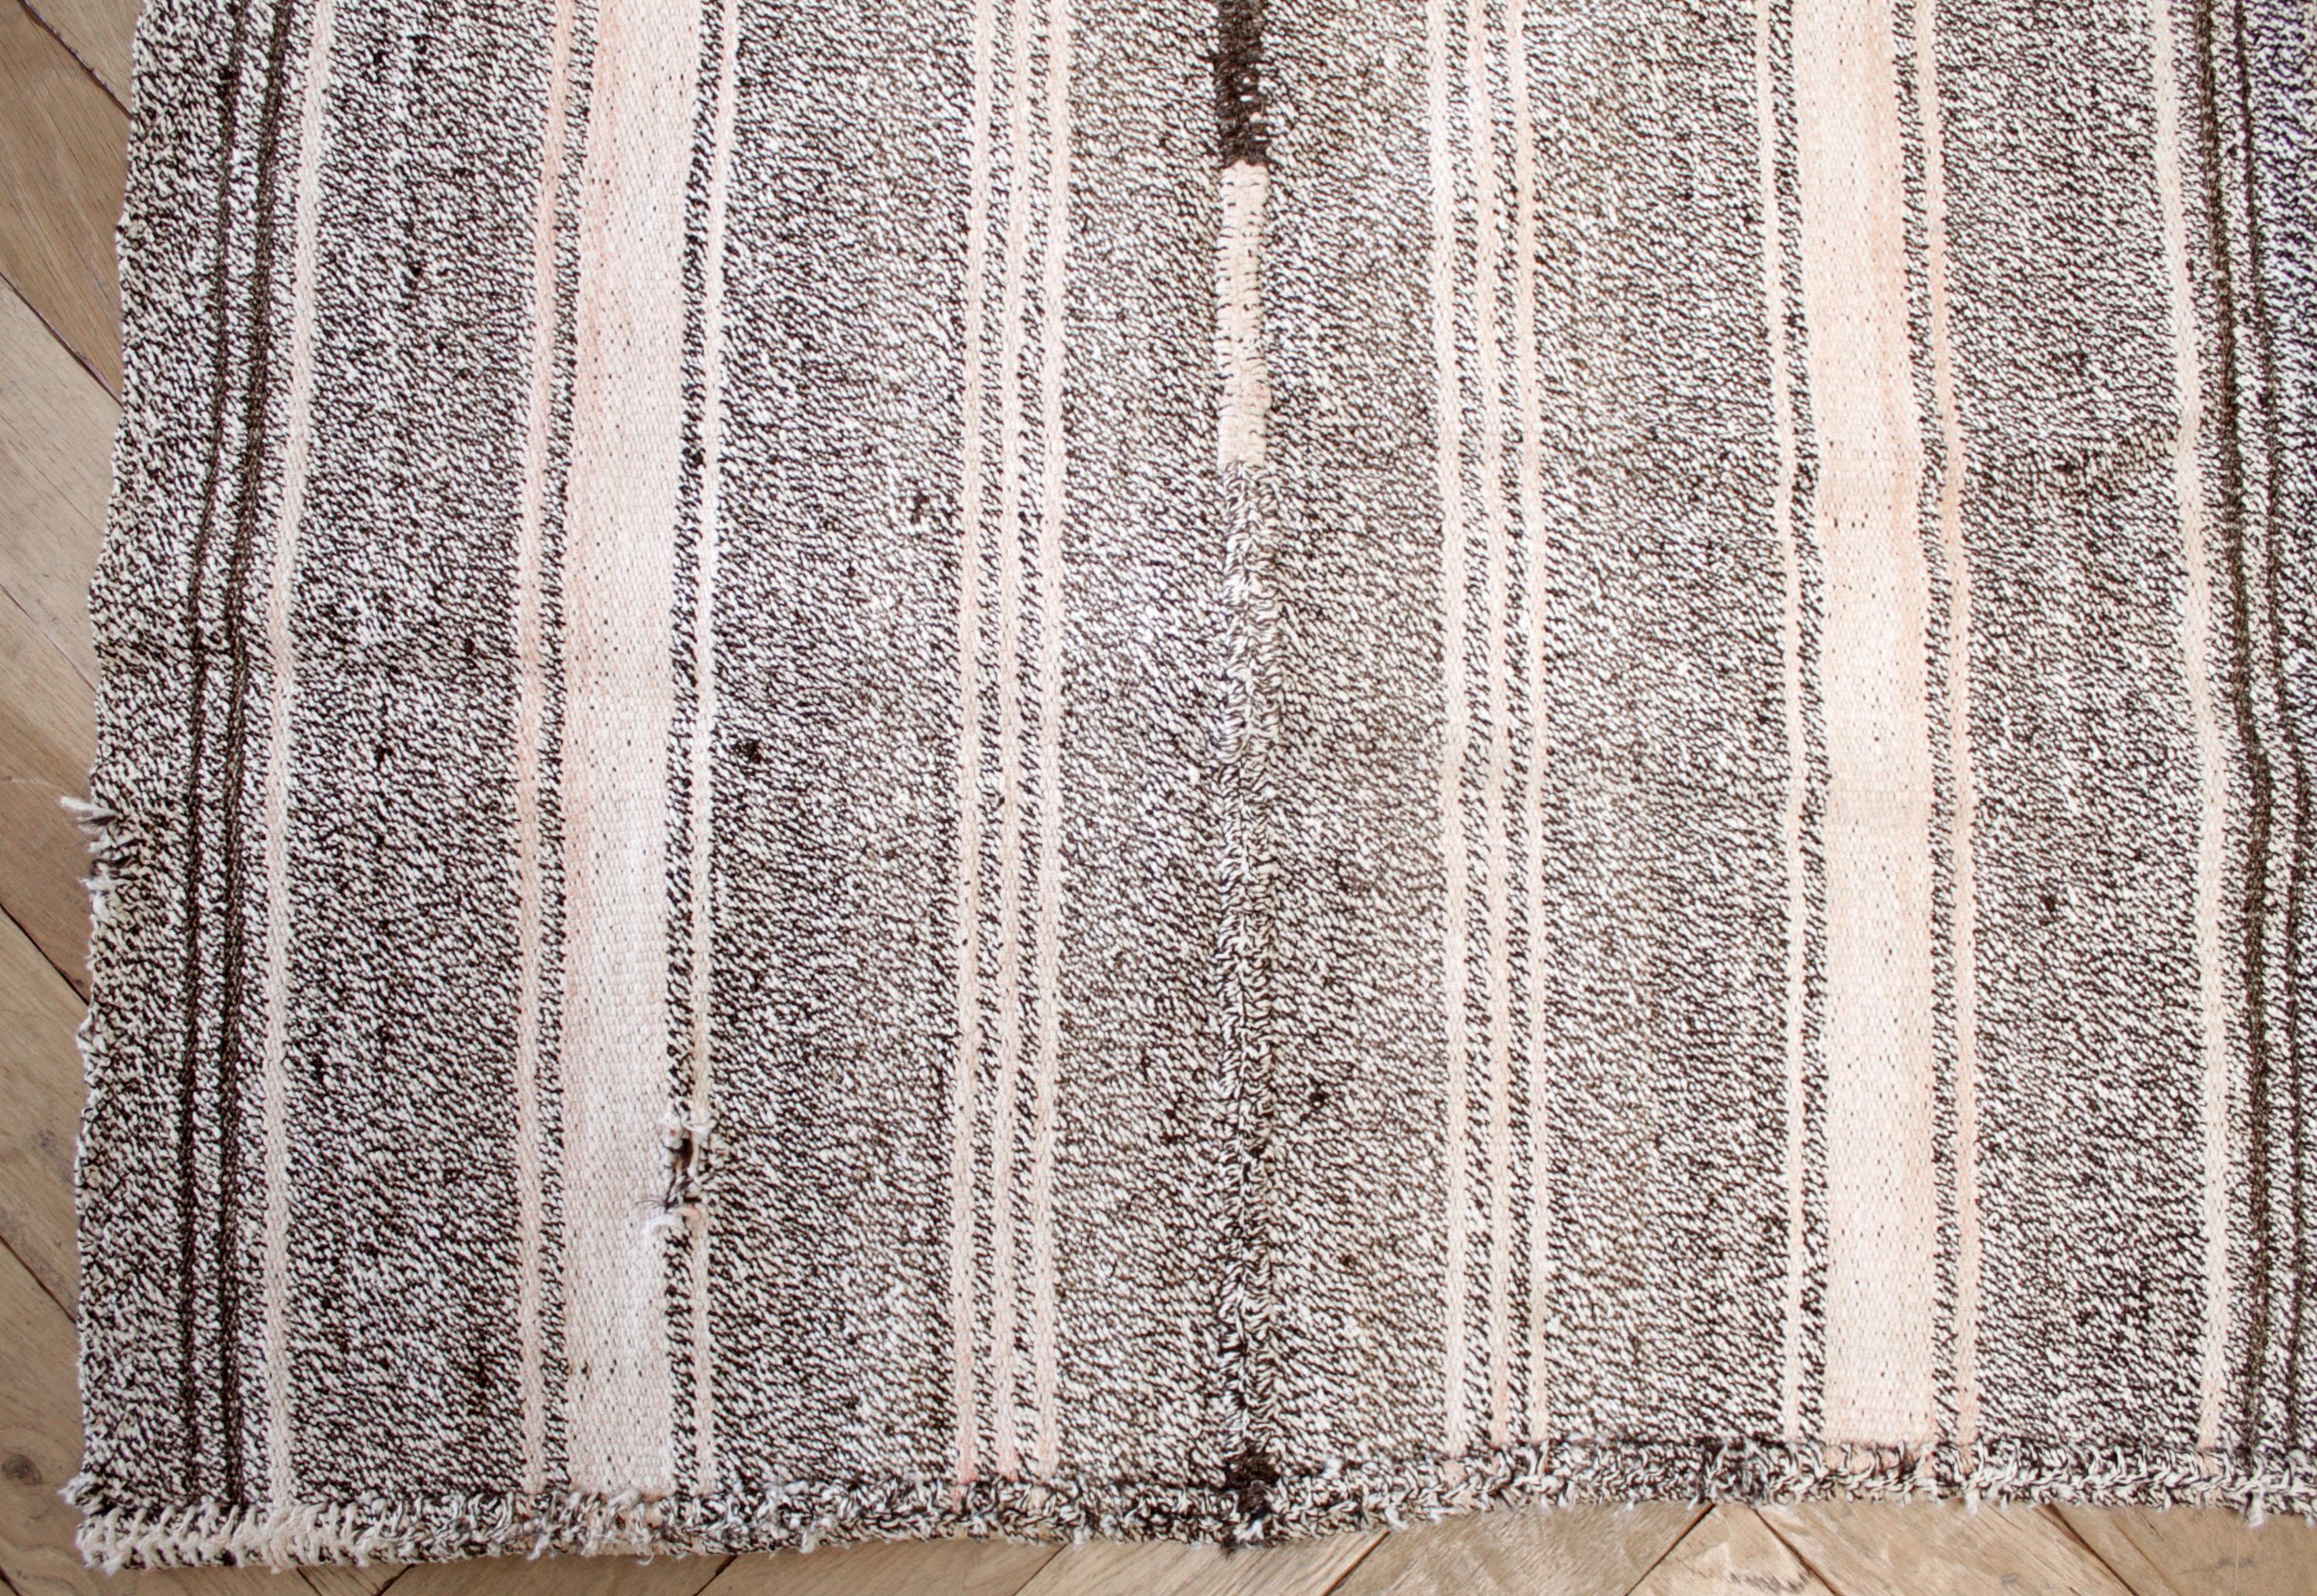 Türkischer Teppich im Vintage-Stil in Braun mit weißer Webart und cremeweißen Streifen, mit dunkelbraunen Streifen und dezenten rosafarbenen Streifentönen.
Flachgewebe, Wolle und Ziegenhaar machen sie extrem haltbar und eignen sich hervorragend für